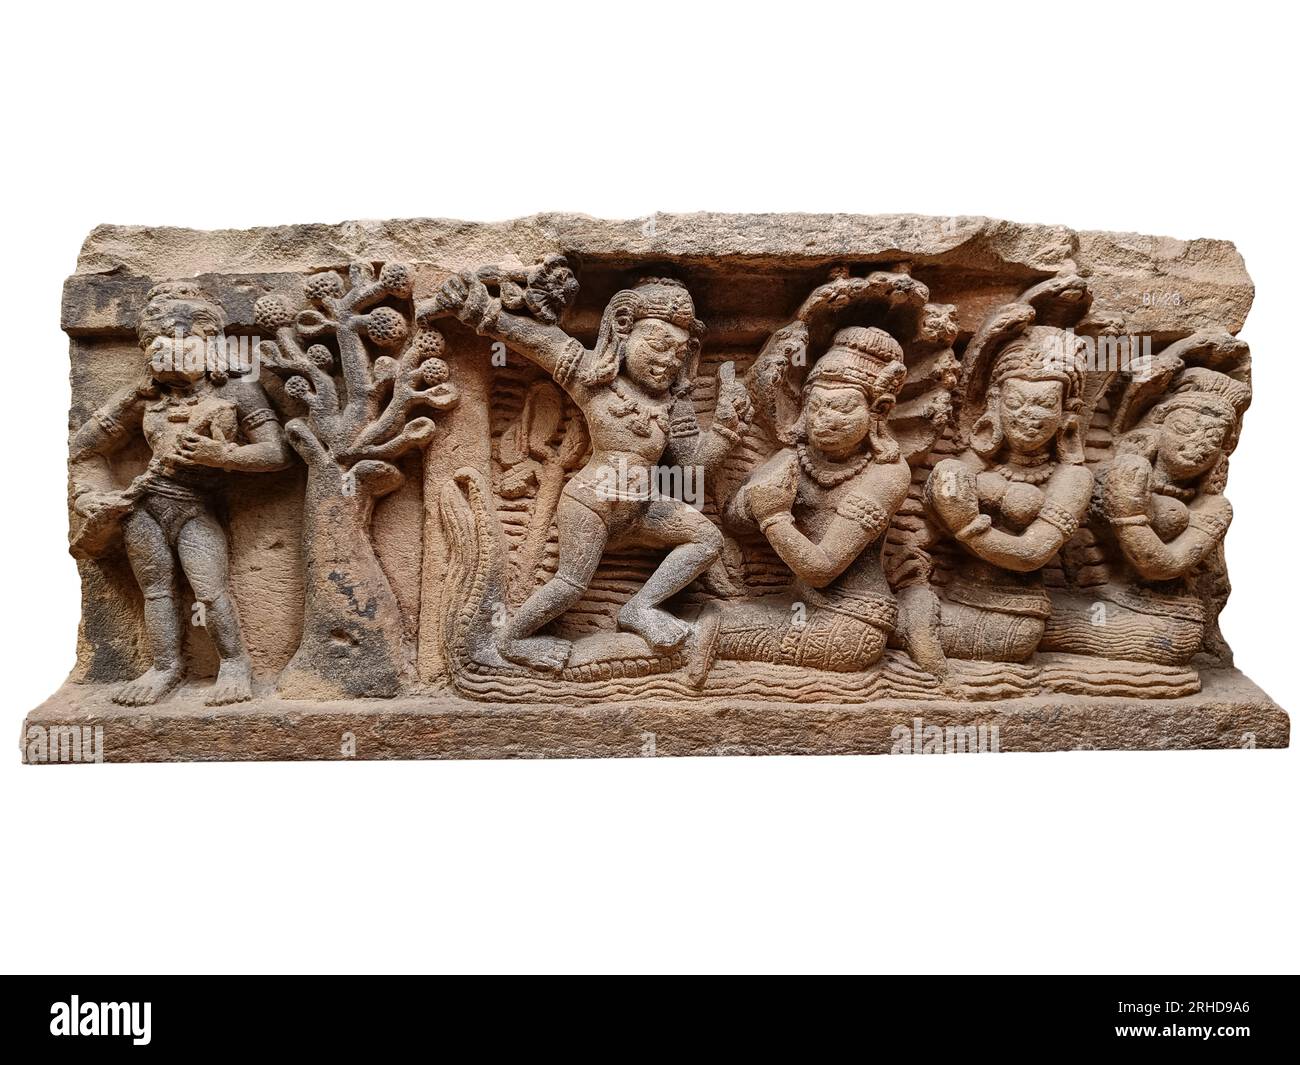 Krishna tanzte über dem gedemütigten Kāliya und seine Frauen, die Krishna um seine Gnade baten. Aus einer Bhagavata Purana. Bhubaneshwar, 7. Jahrhundert n. Chr. Stockfoto